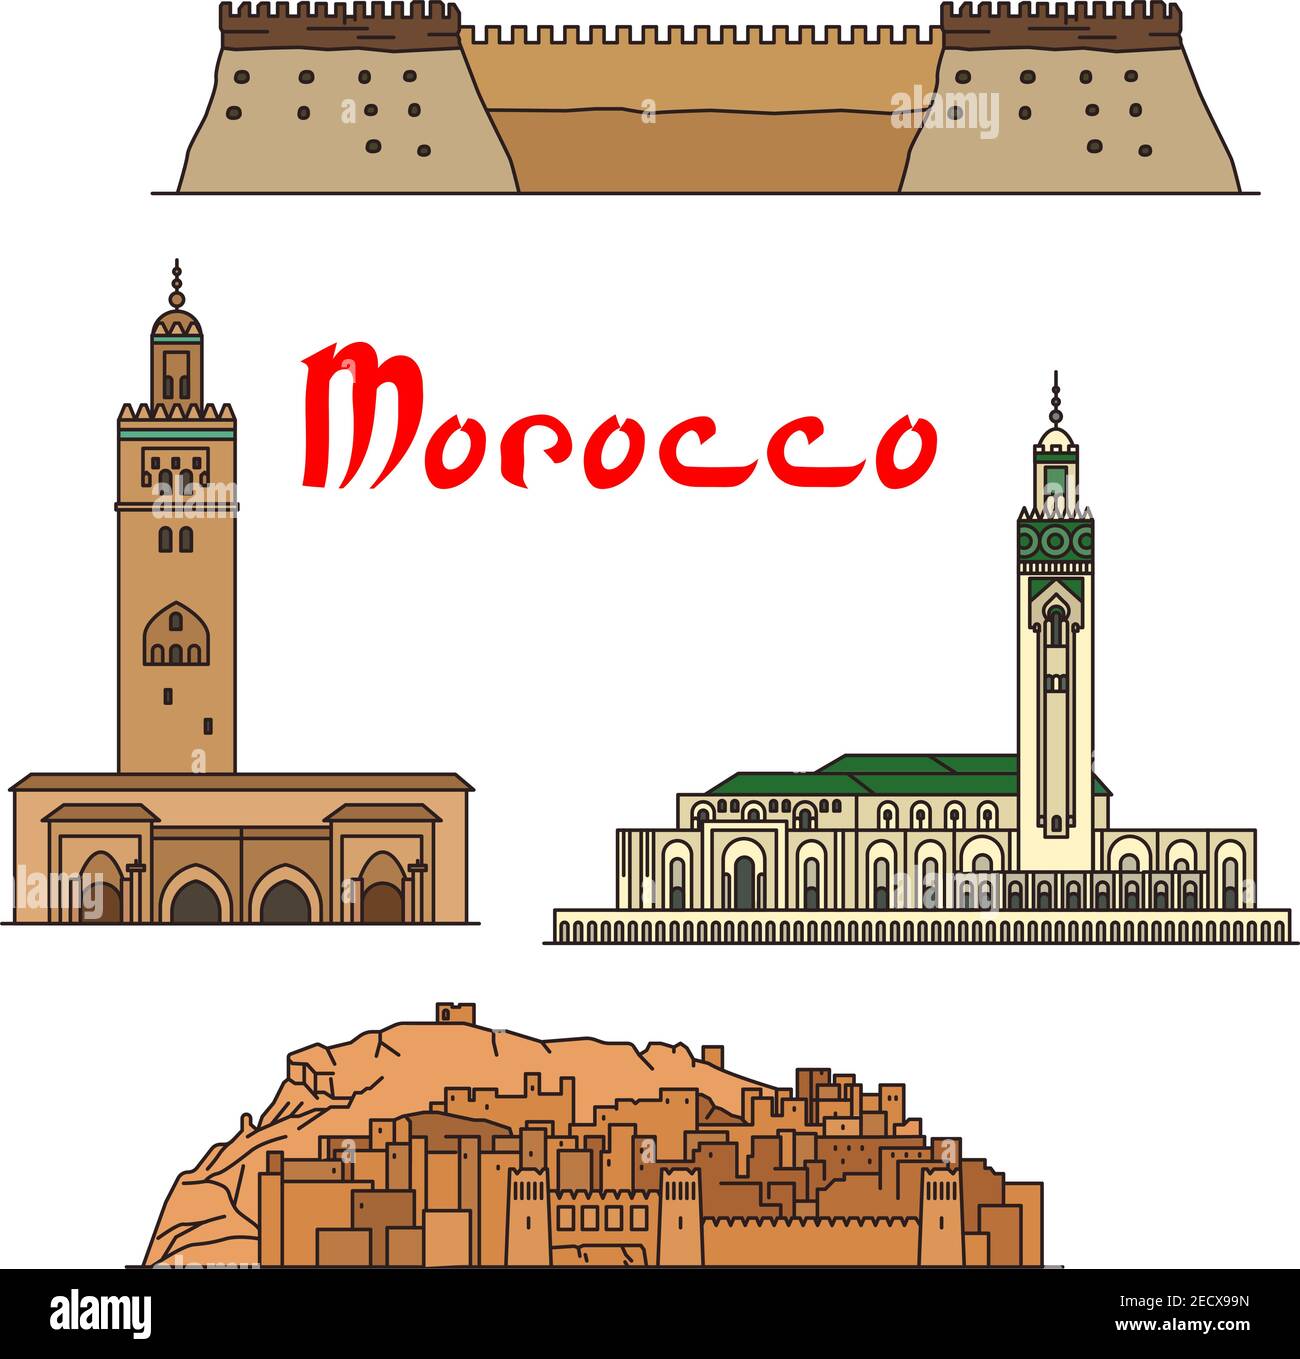 Monuments historiques et sites touristiques du Maroc. Vecteur icônes d'architecture détaillée de la mosquée Koutoubia, ait Ben Haddou, mosquée Hassan II, Kasbah d'Agadir f Illustration de Vecteur